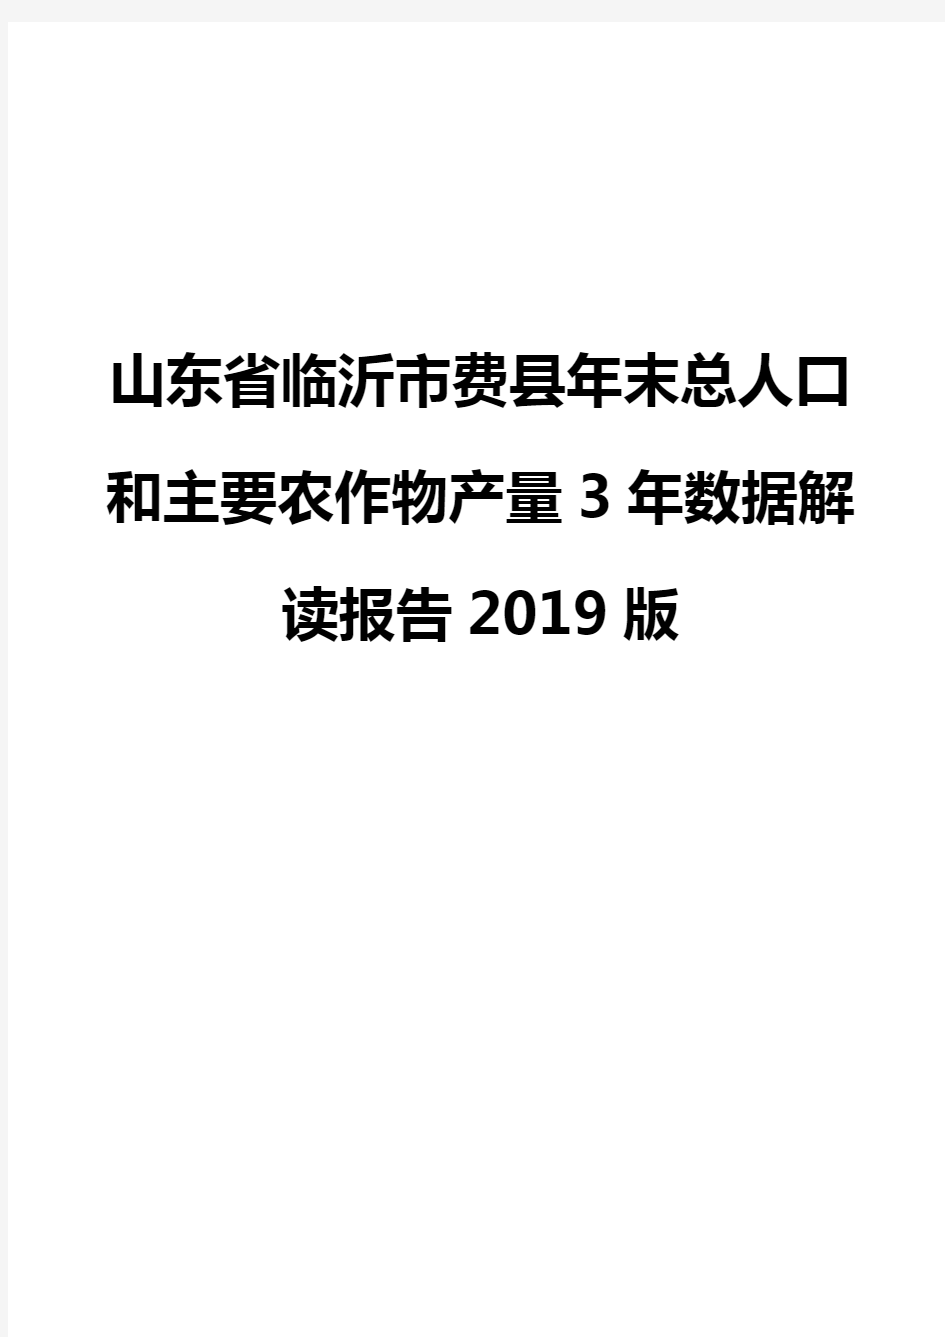 山东省临沂市费县年末总人口和主要农作物产量3年数据解读报告2019版